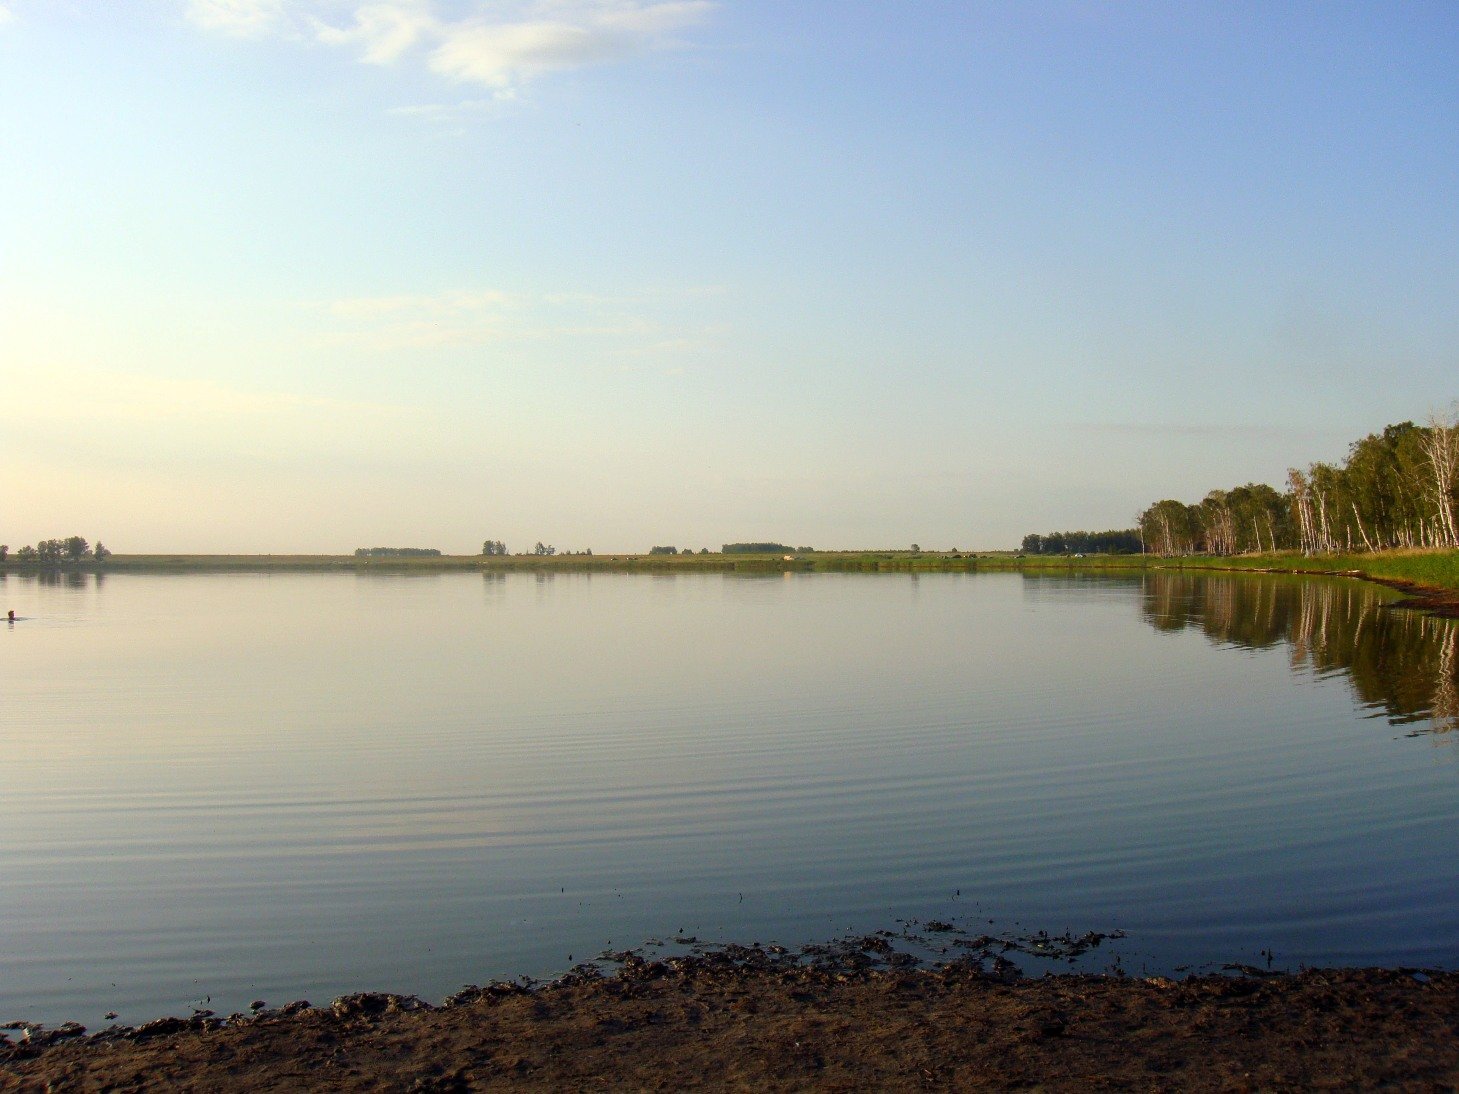 Соленые озера челябинской области